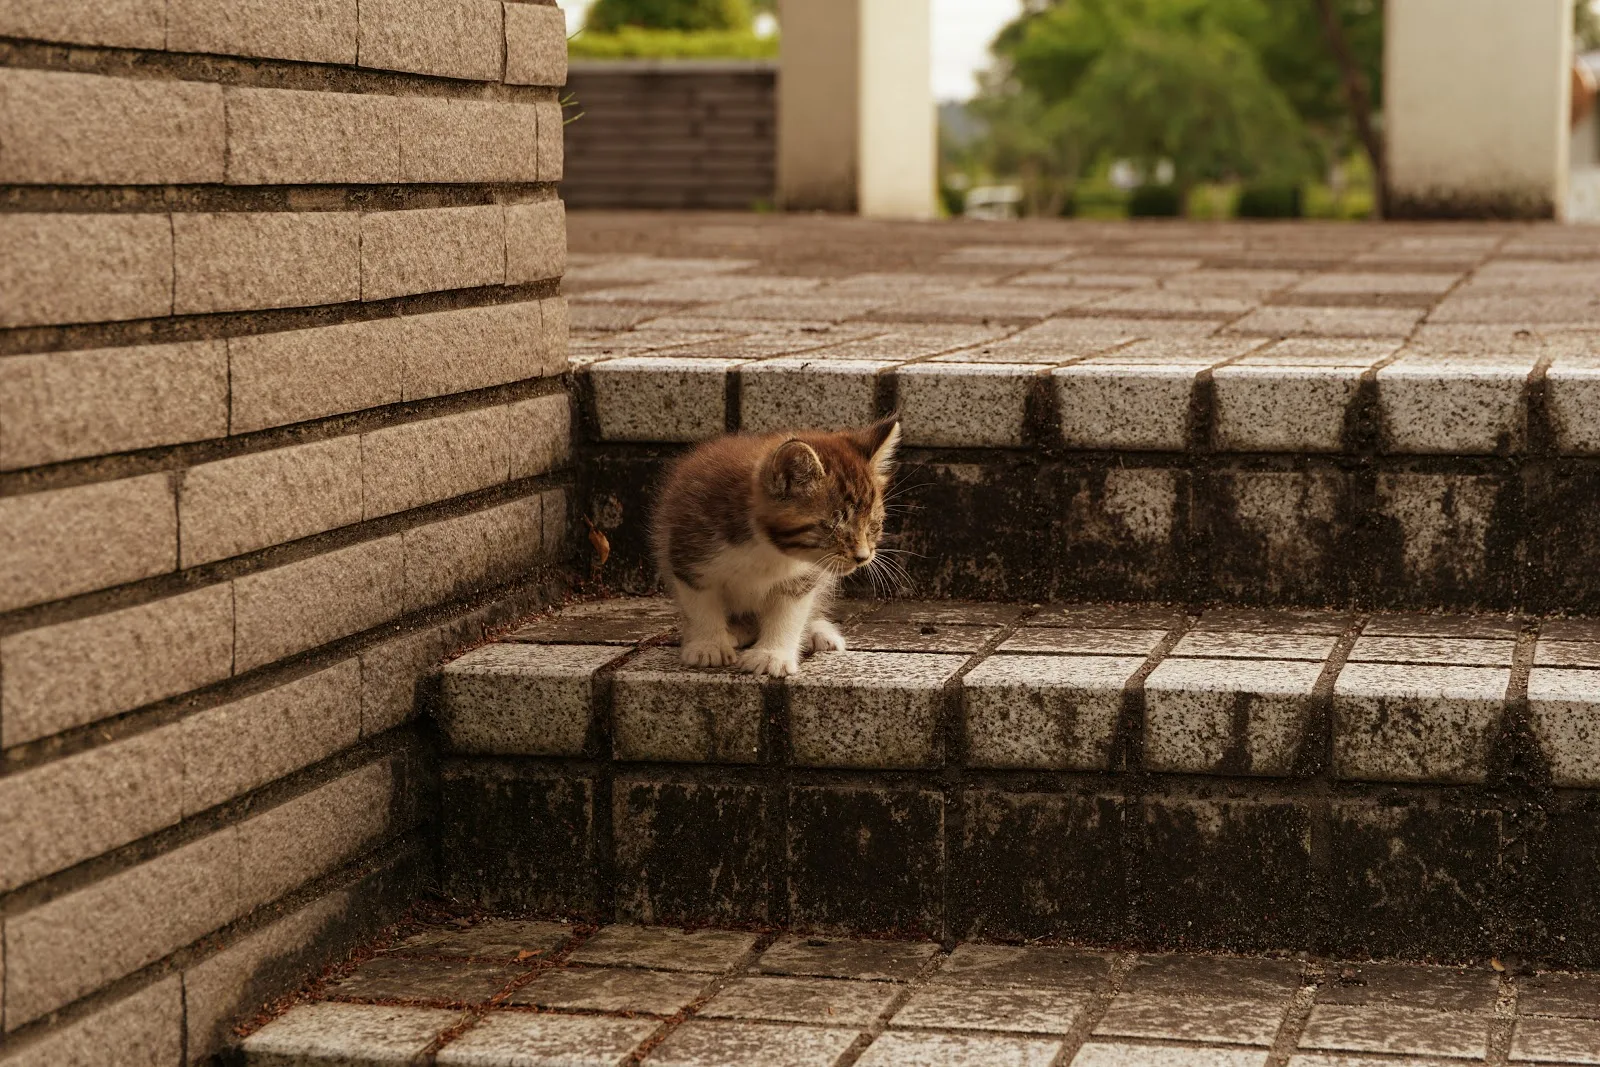 公園の階段の上の方に座った子猫が降りようと下の方へ様子を見ている